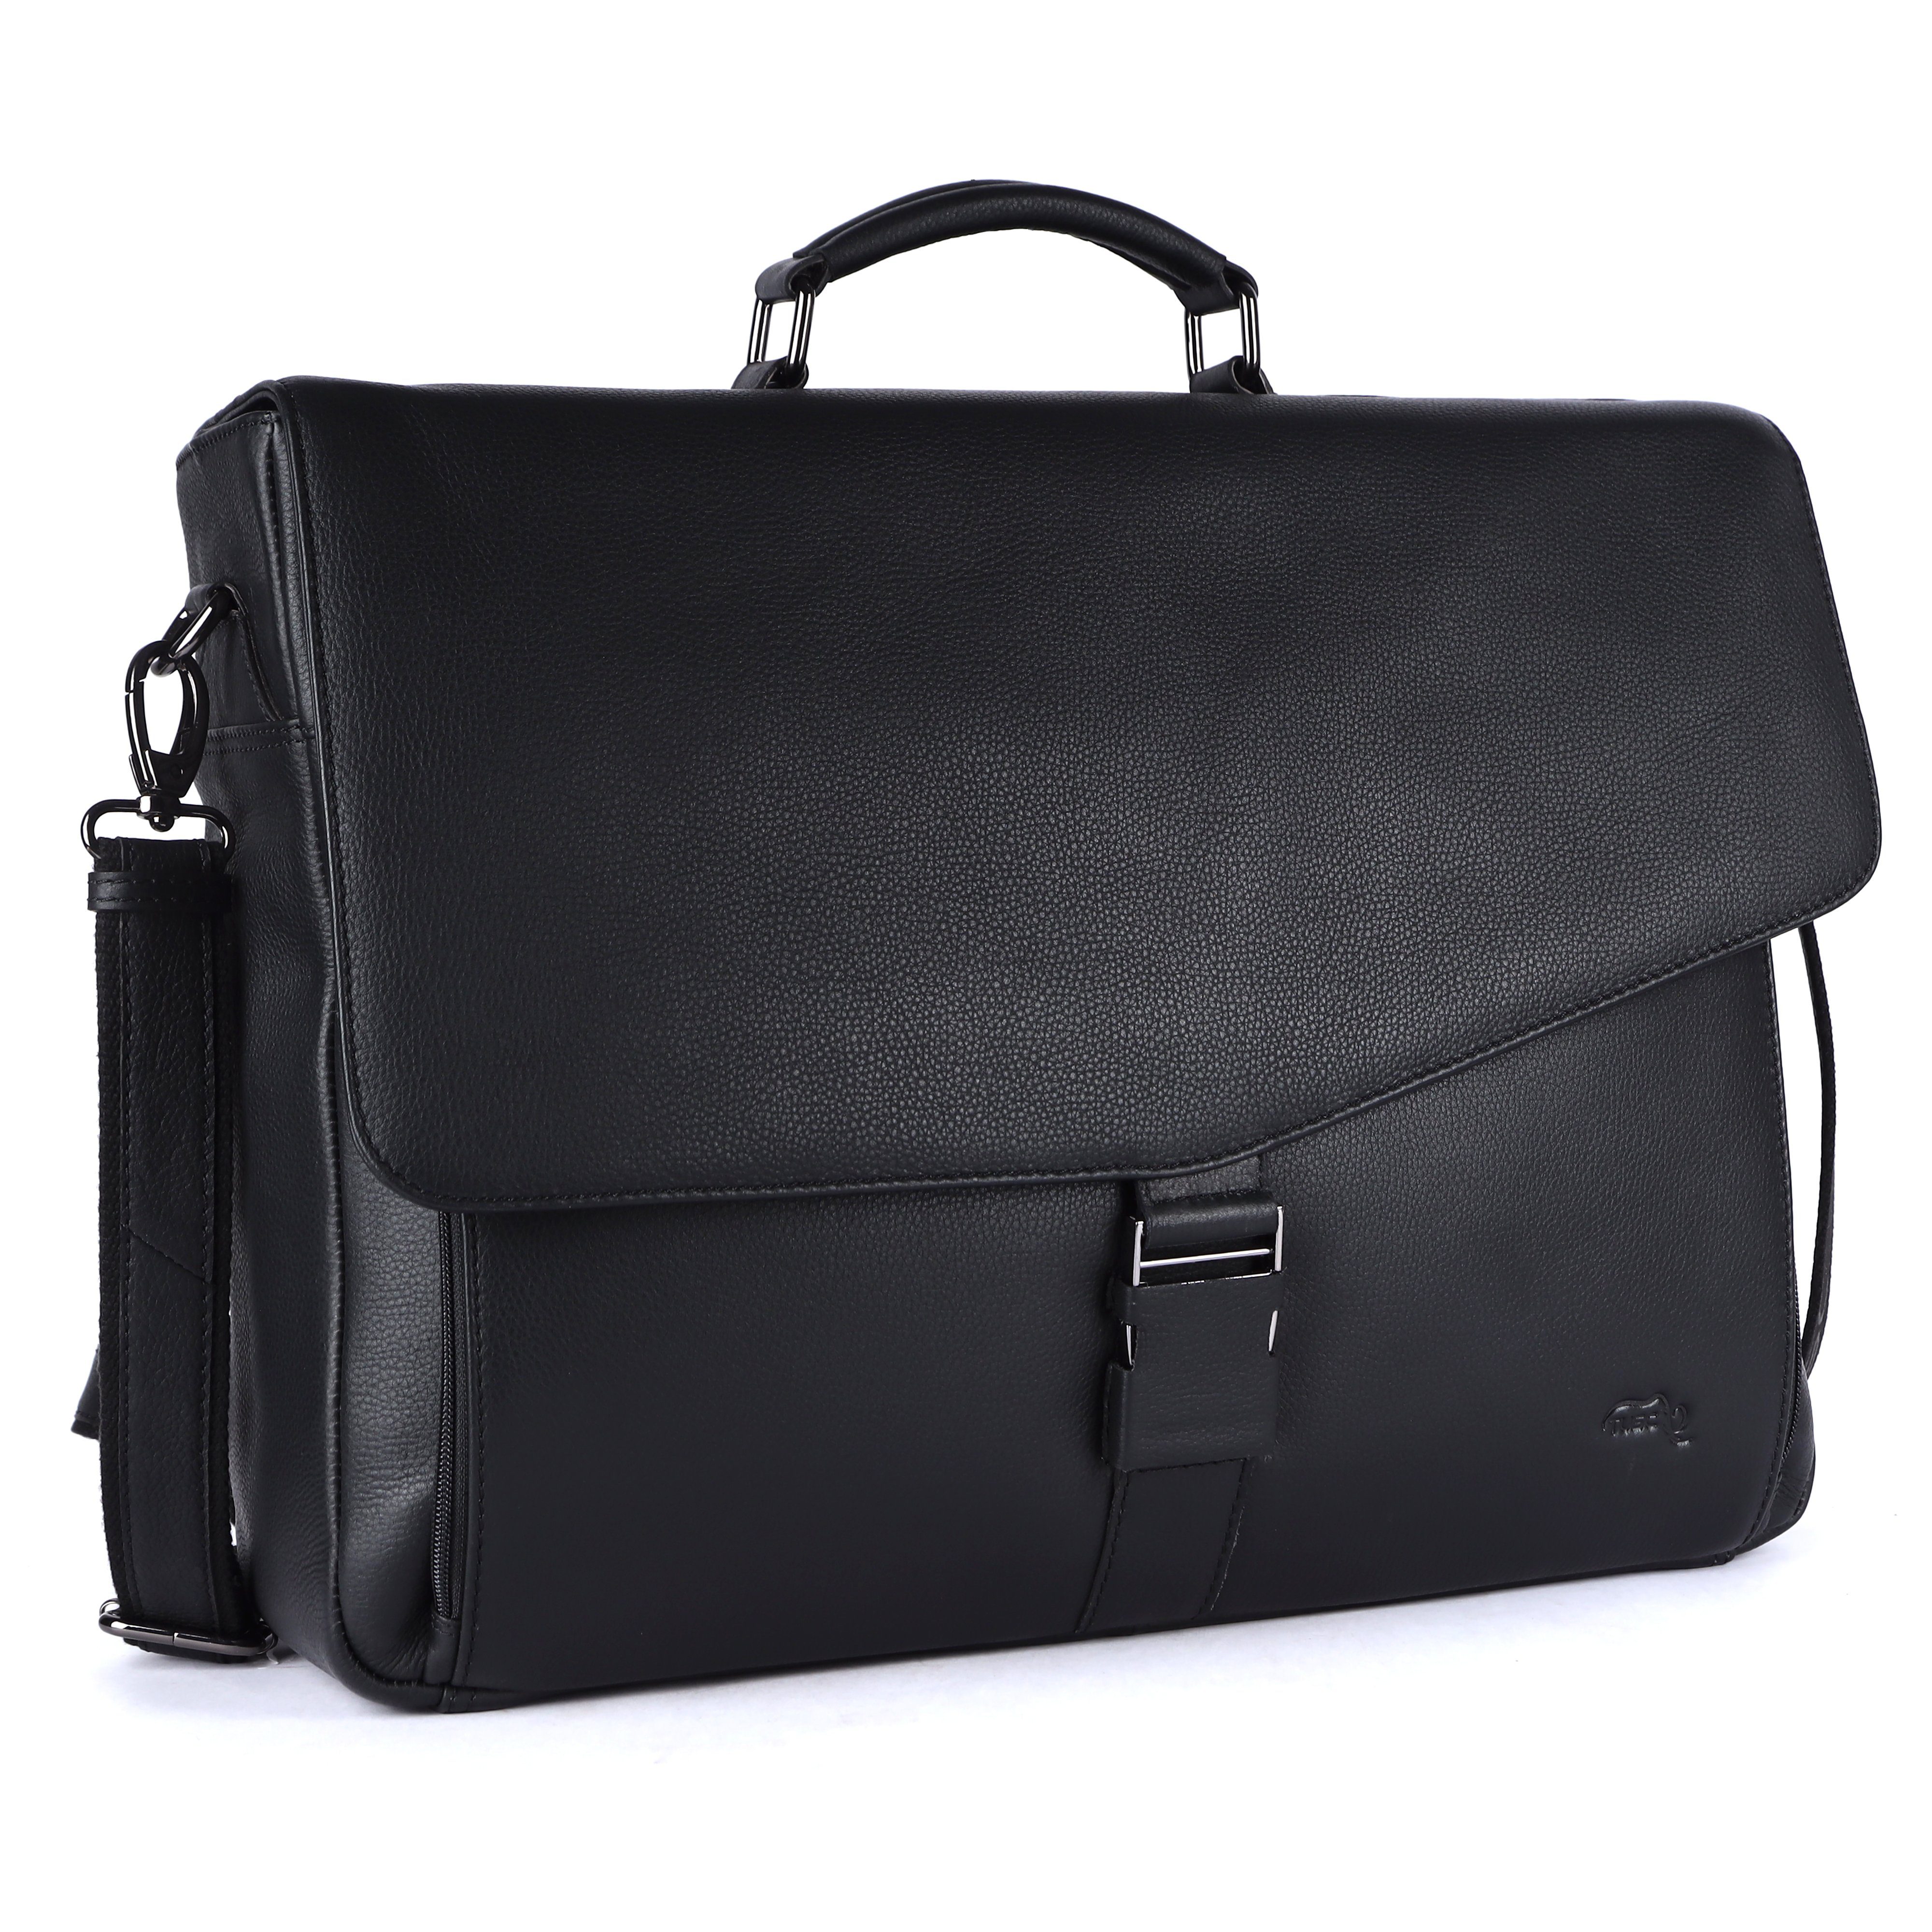 TUSC Businesstasche Zeron, Premium Ledertasche für Laptop bis 17,3 Zoll mit Vintage Stil Charcoal